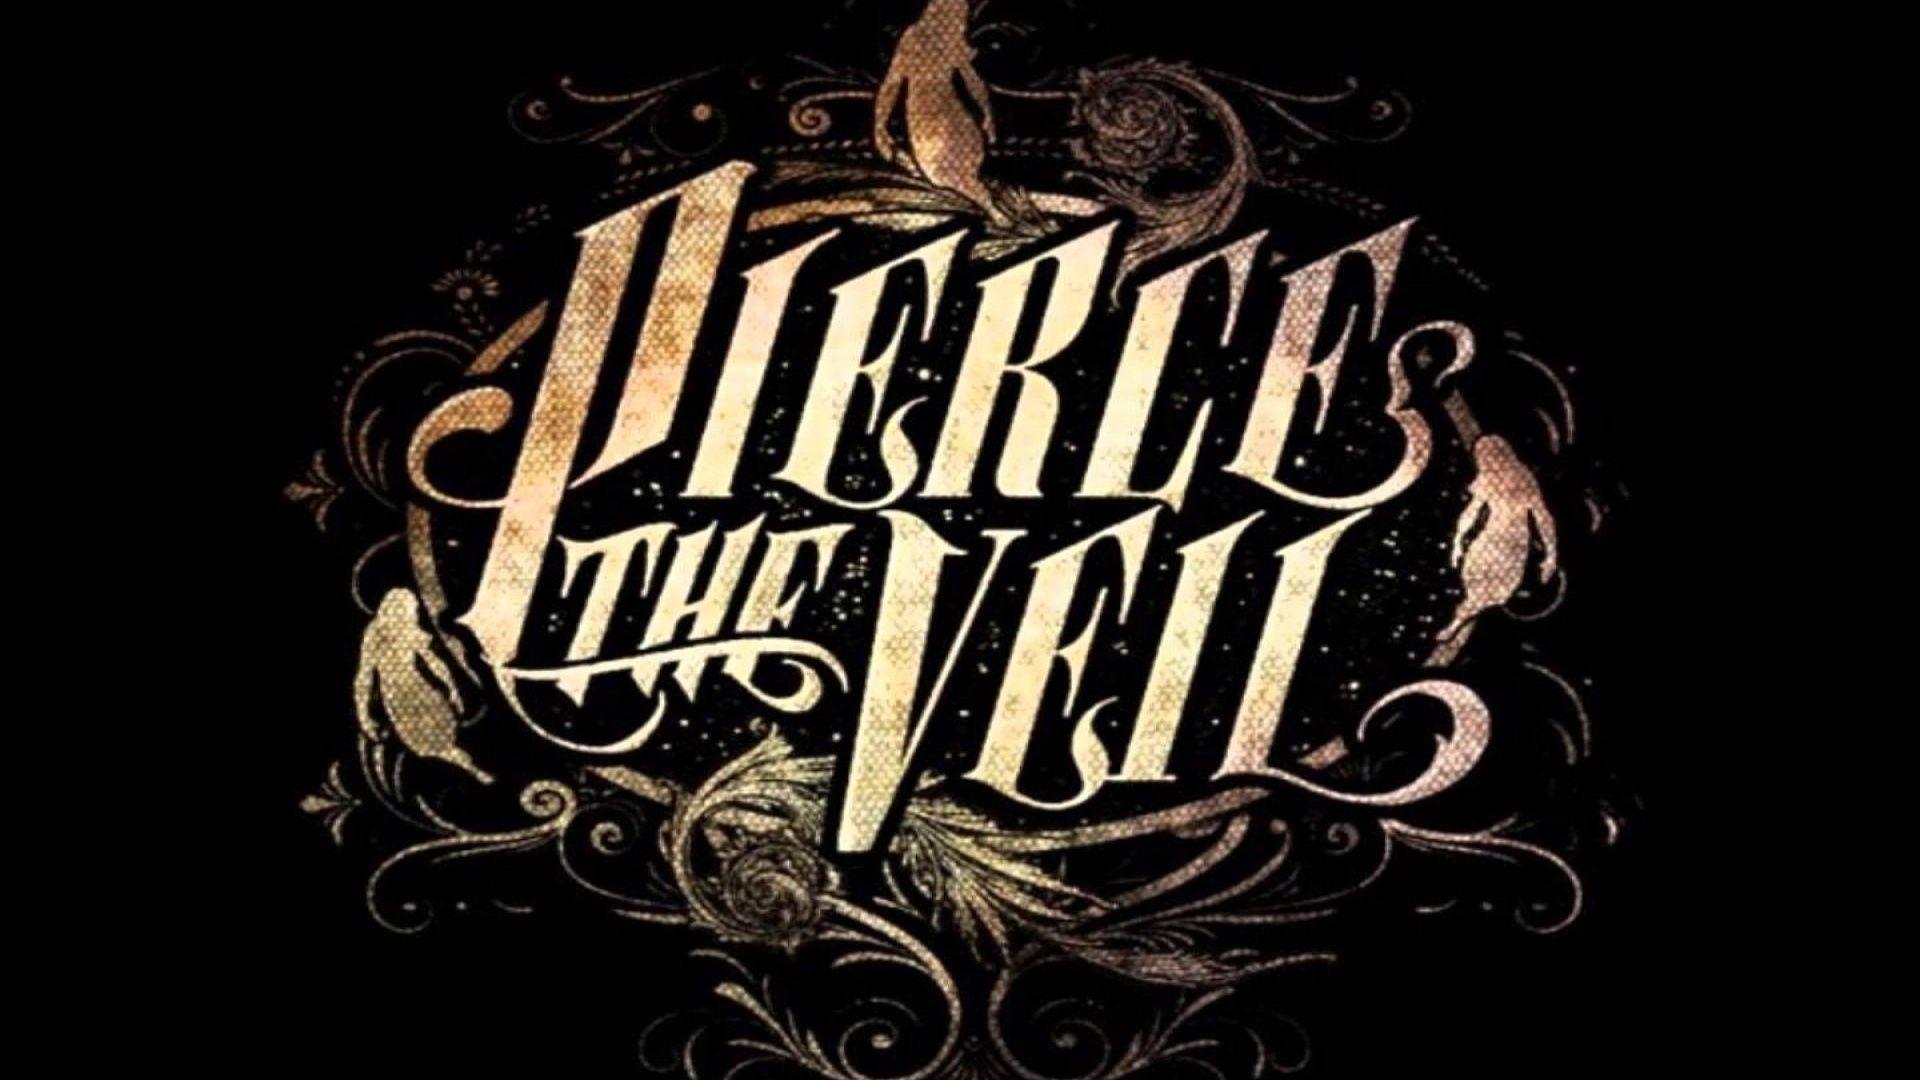 pierce the veil full album misadventures free download